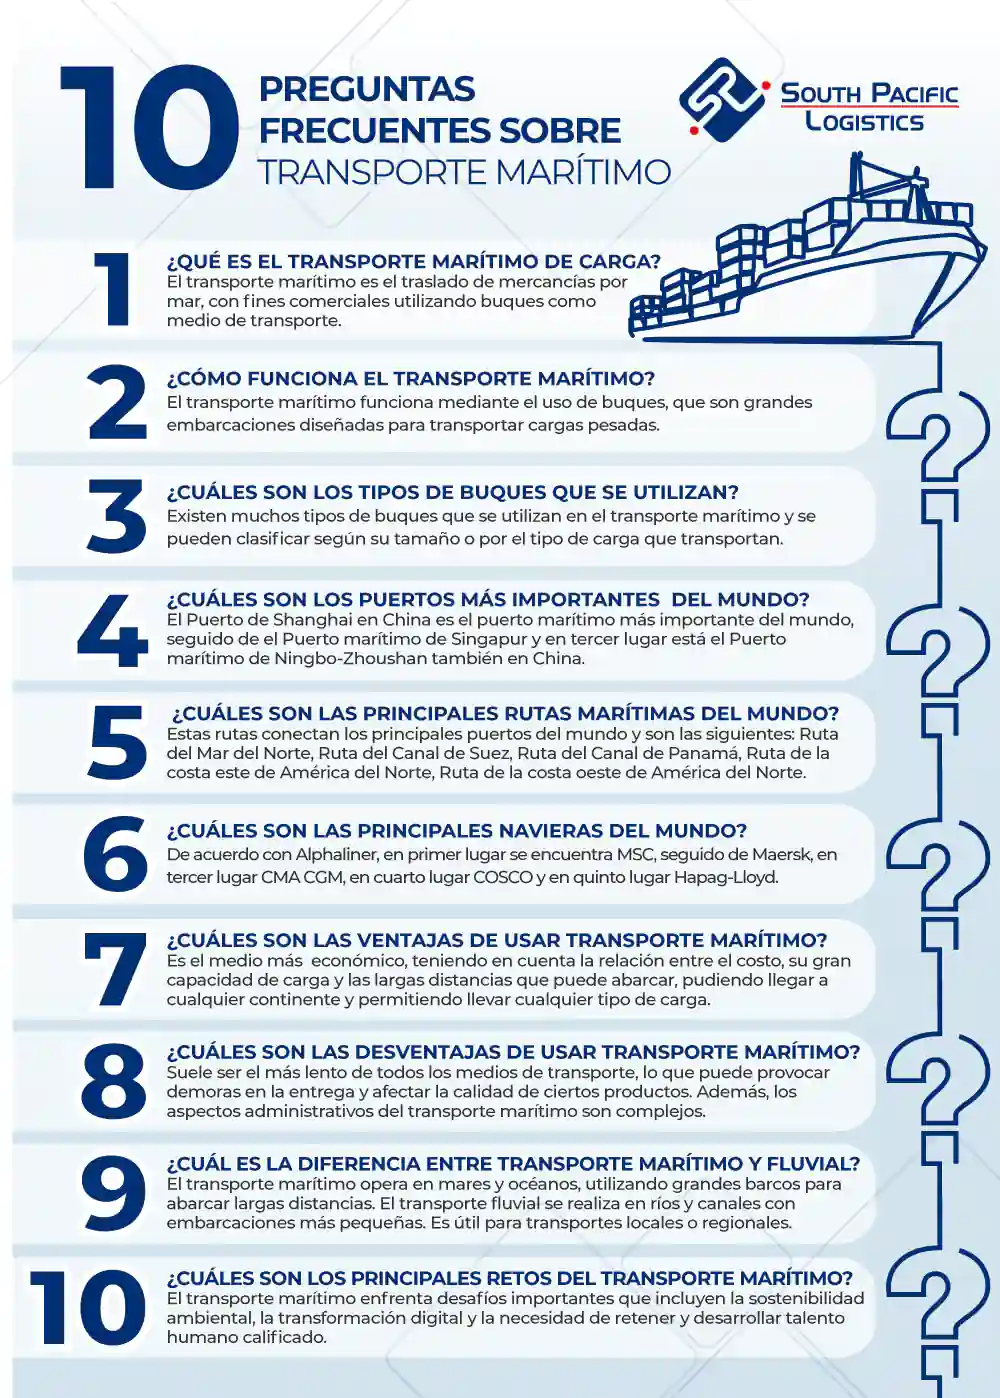 infografia preguntas frecuentes sobre transporte maritimo